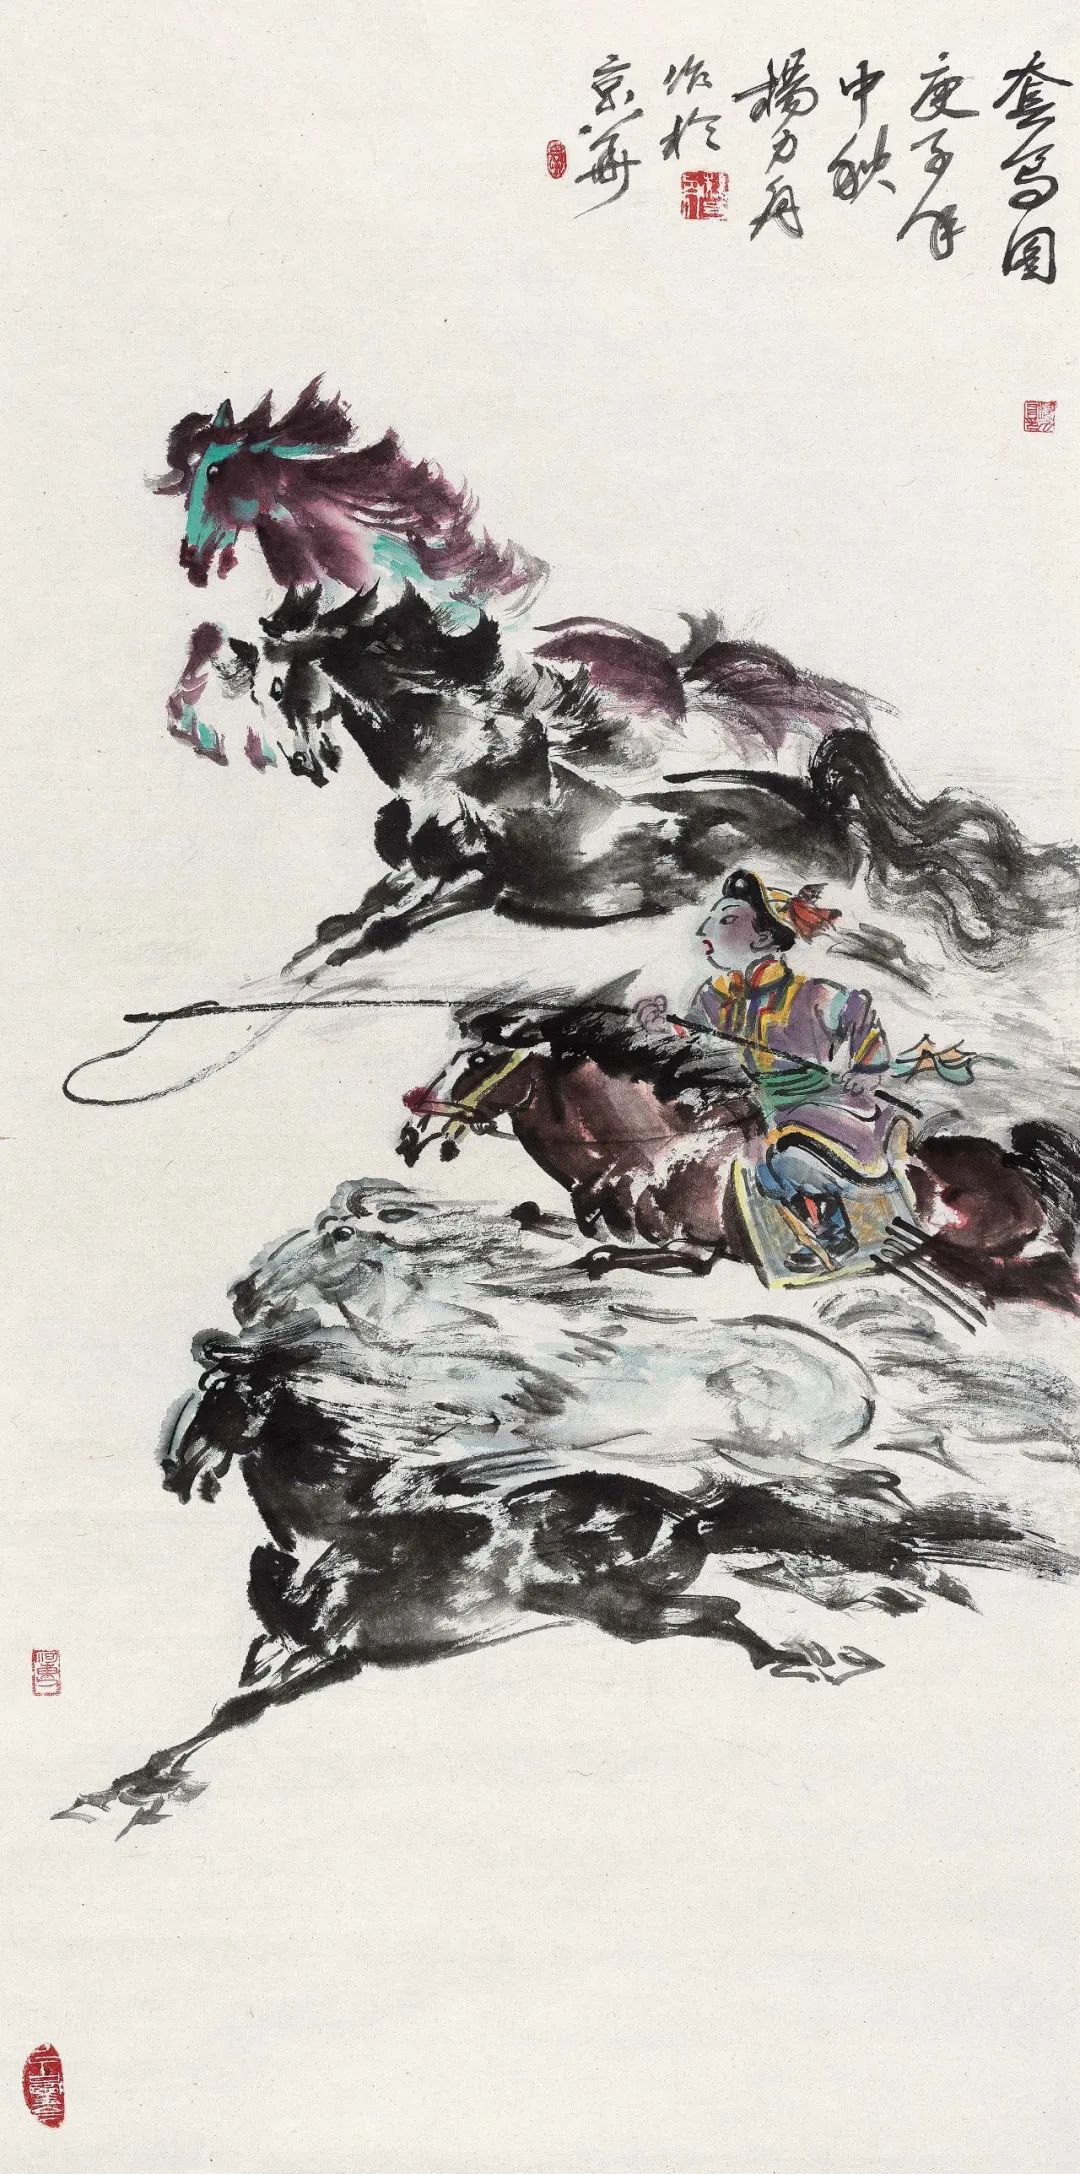 “时代温度——当代中国画学术邀请展”在广东画院盛大开幕